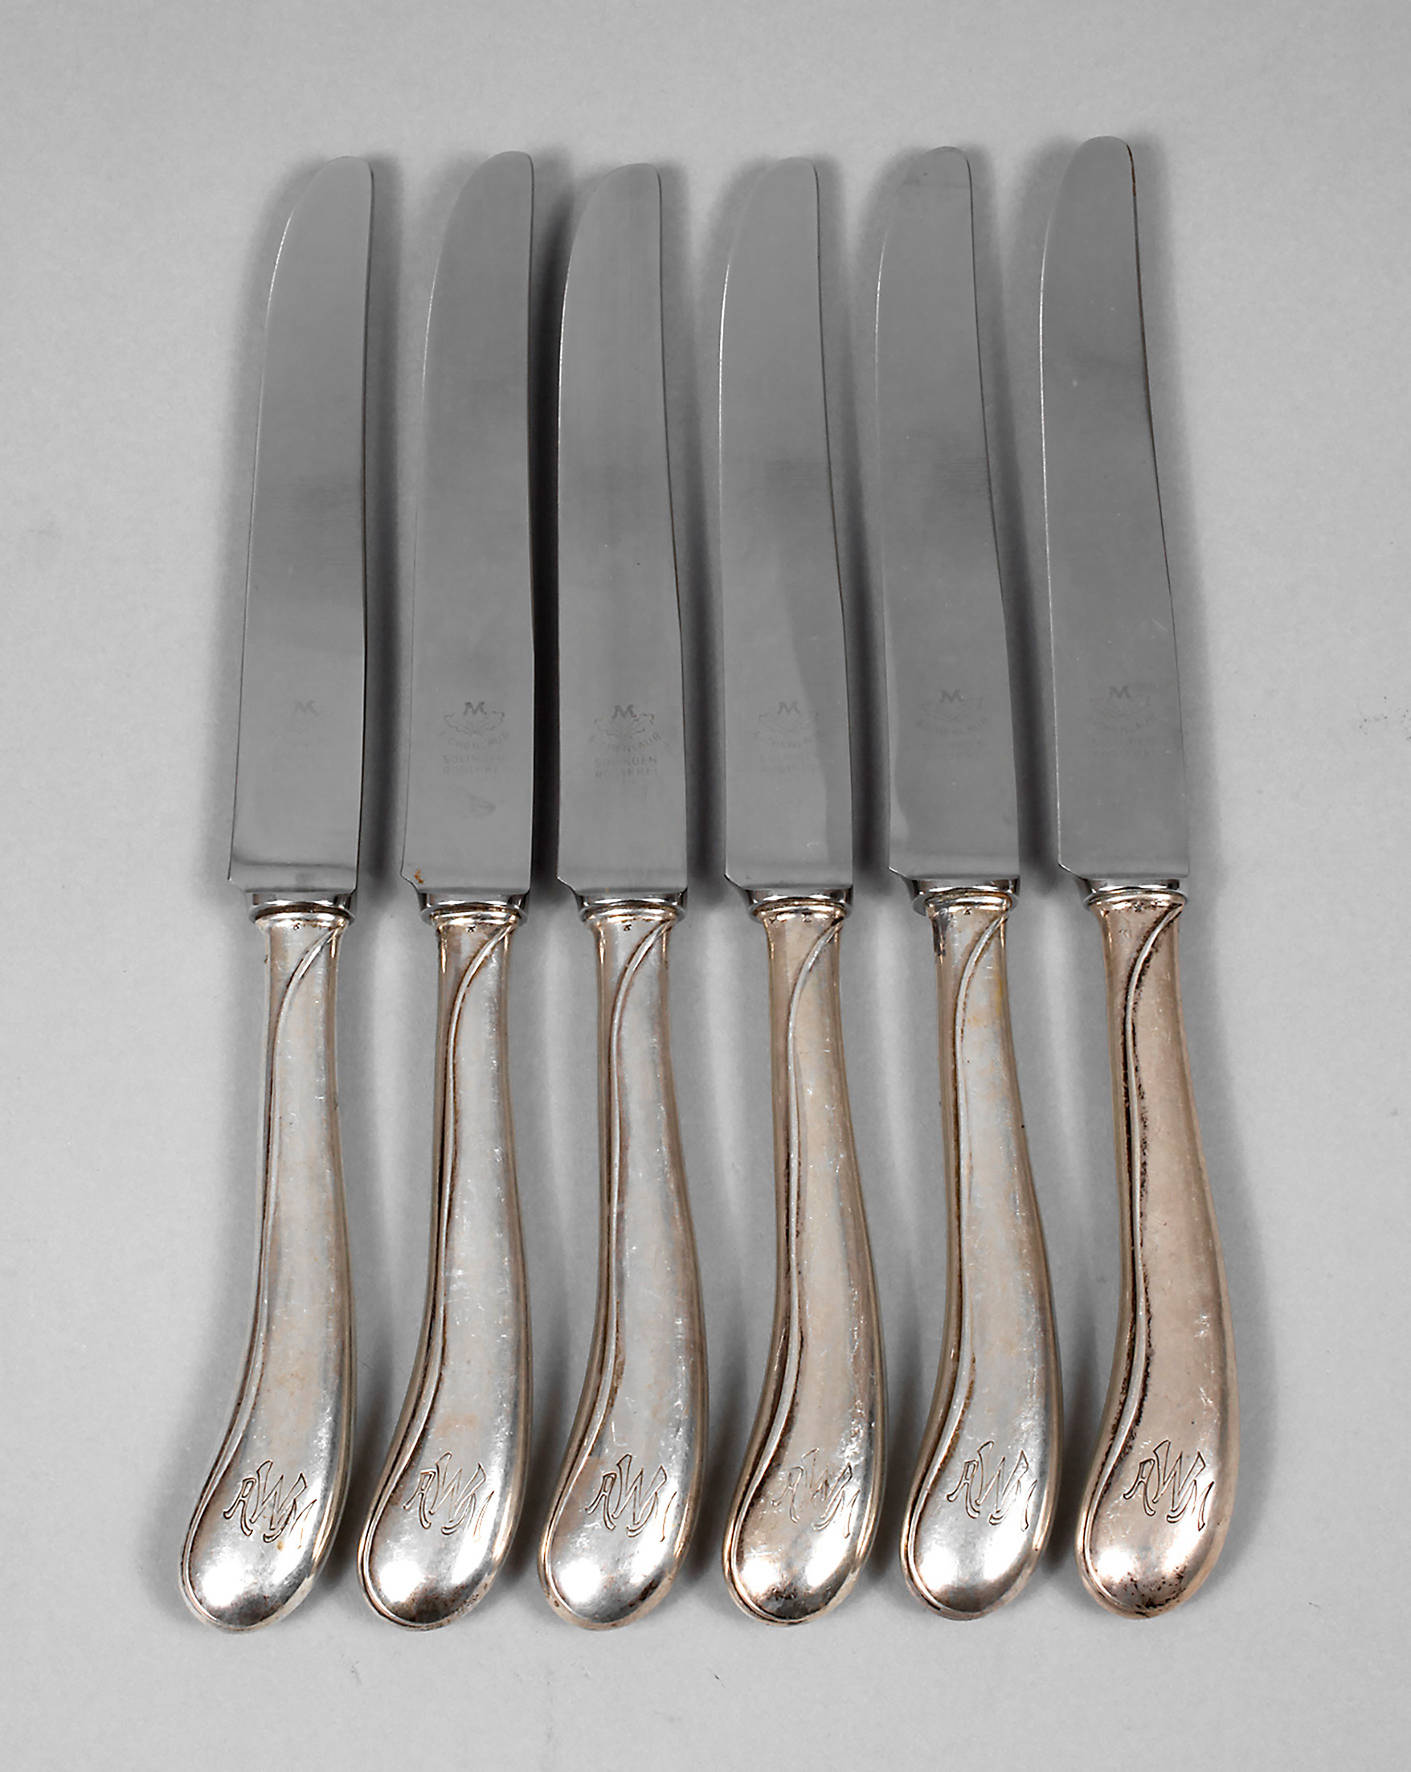 Heinrich Vogeler sechs Messer